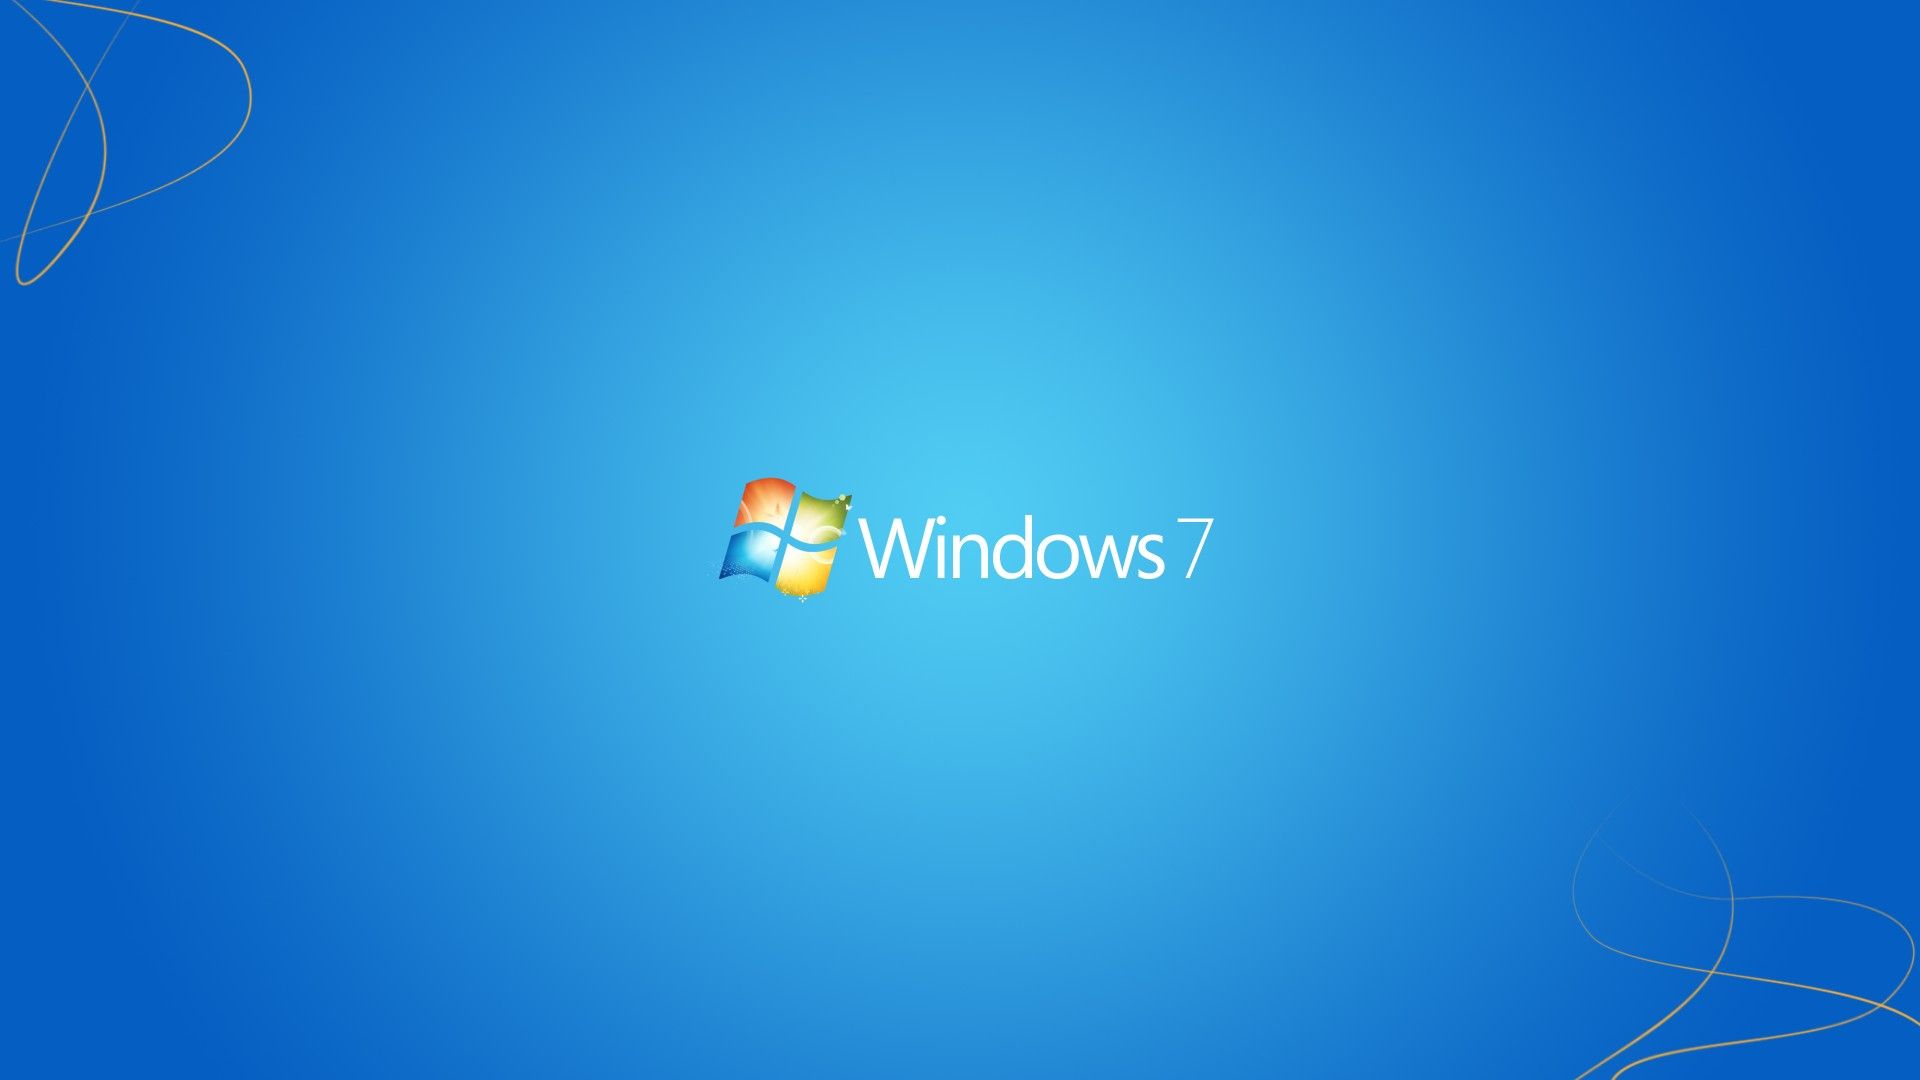 Bạn đang muốn tìm kiếm hình nền Windows 7 đẹp nhưng không biết phải bắt đầu từ đâu? WallpaperDog sẽ giúp bạn với nhiều tùy chọn cực kỳ đa dạng được sưu tầm từ khắp nơi trên thế giới. Khám phá ngay những hình nền độc đáo và phong phú tại đây.